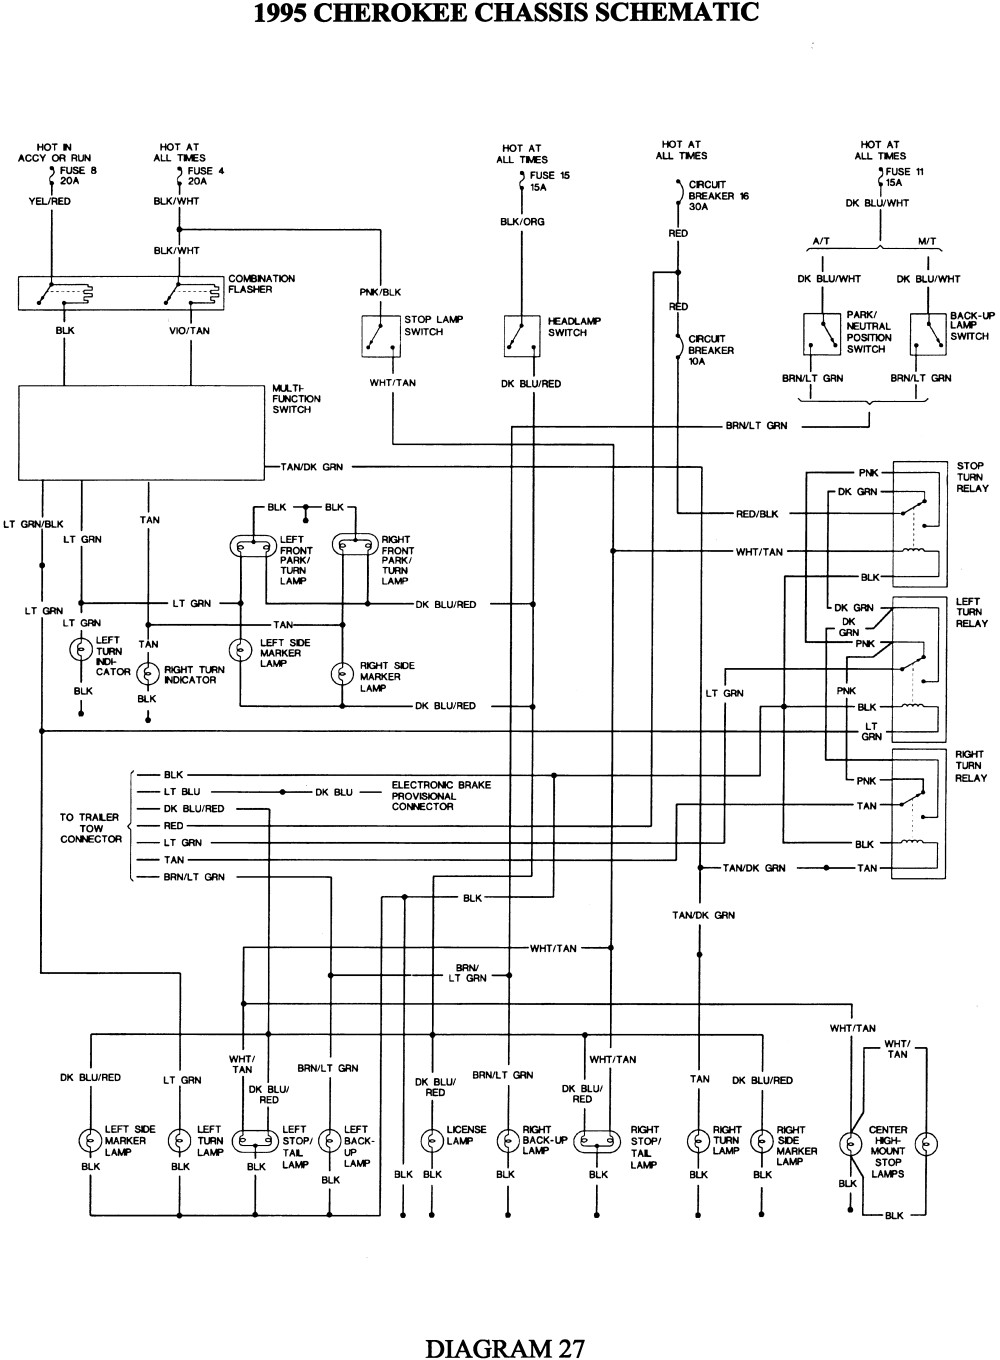 International 4700 Wiring Diagram Pdf - Wiring Diagram